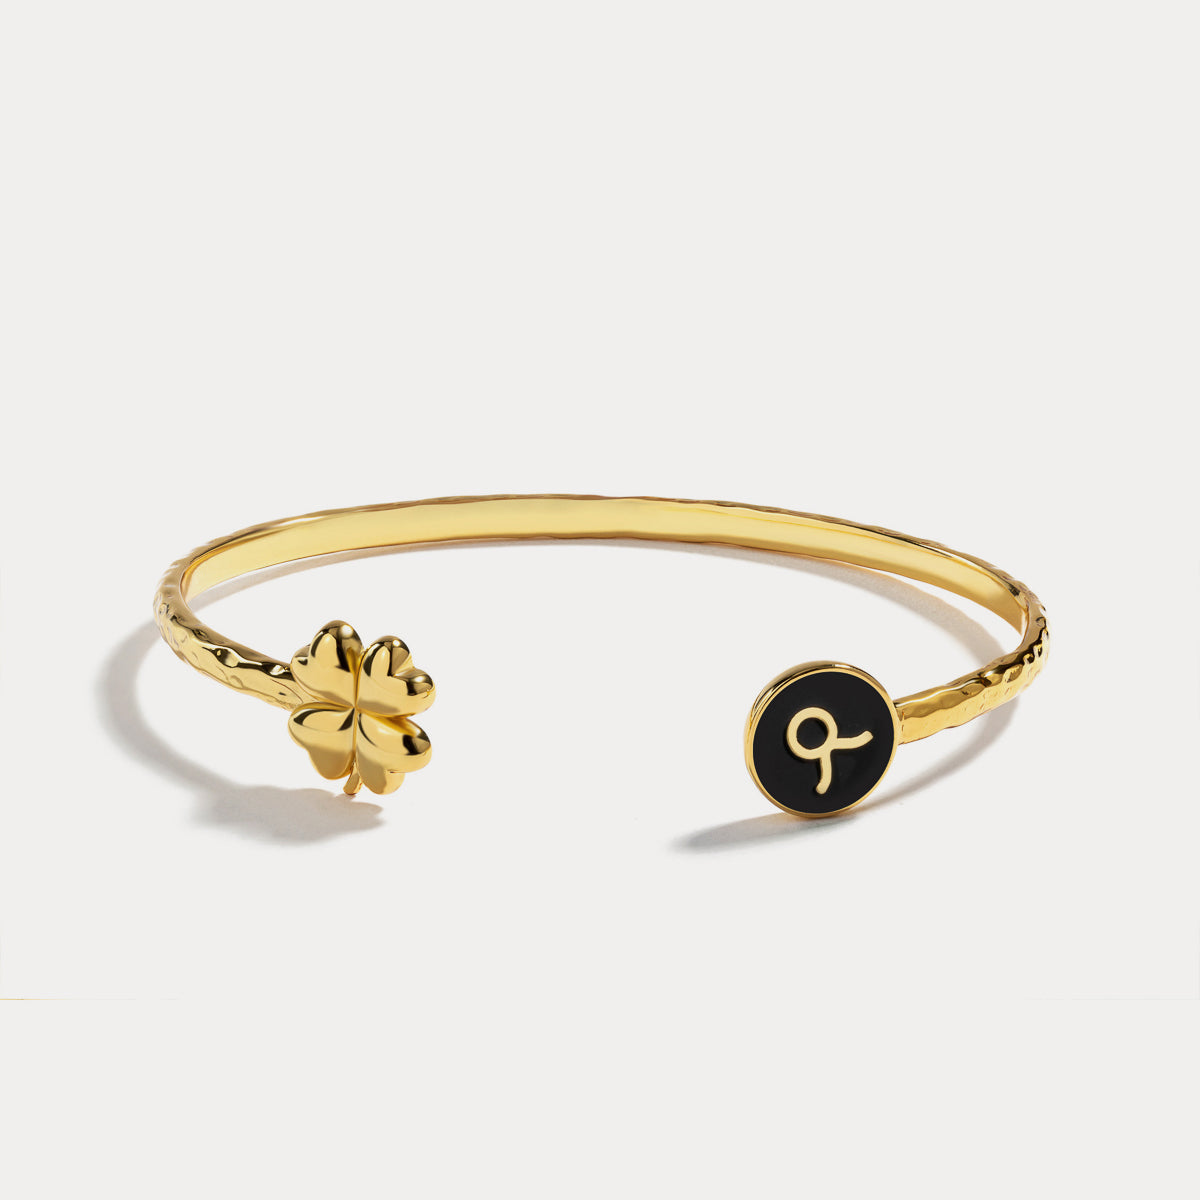 Taurus astrological sign bracelet